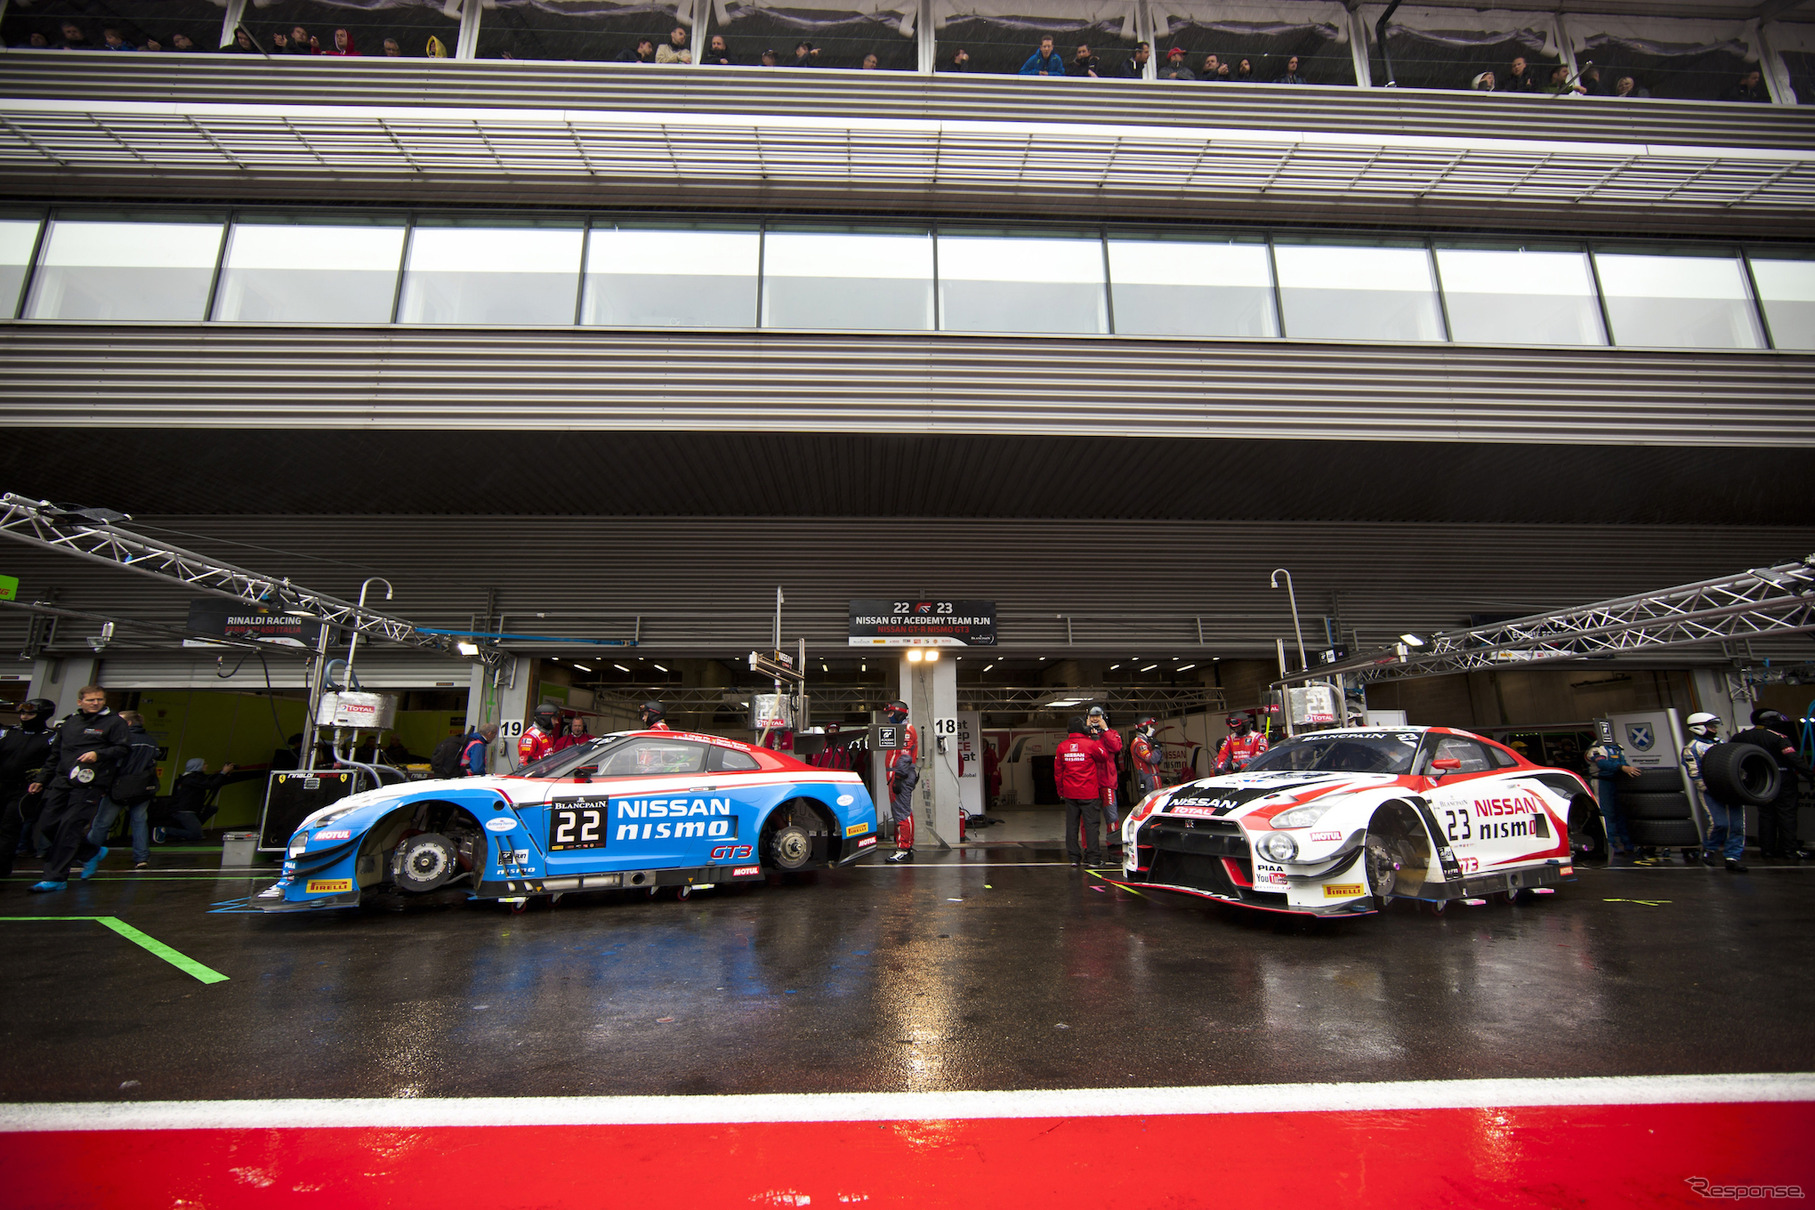 『Nissan GT-R NISMO GT3』はスーパー耐久、ブランパンGT、ニュル24時間など、国内外の様々なレースでフル回転の活躍を見せる。